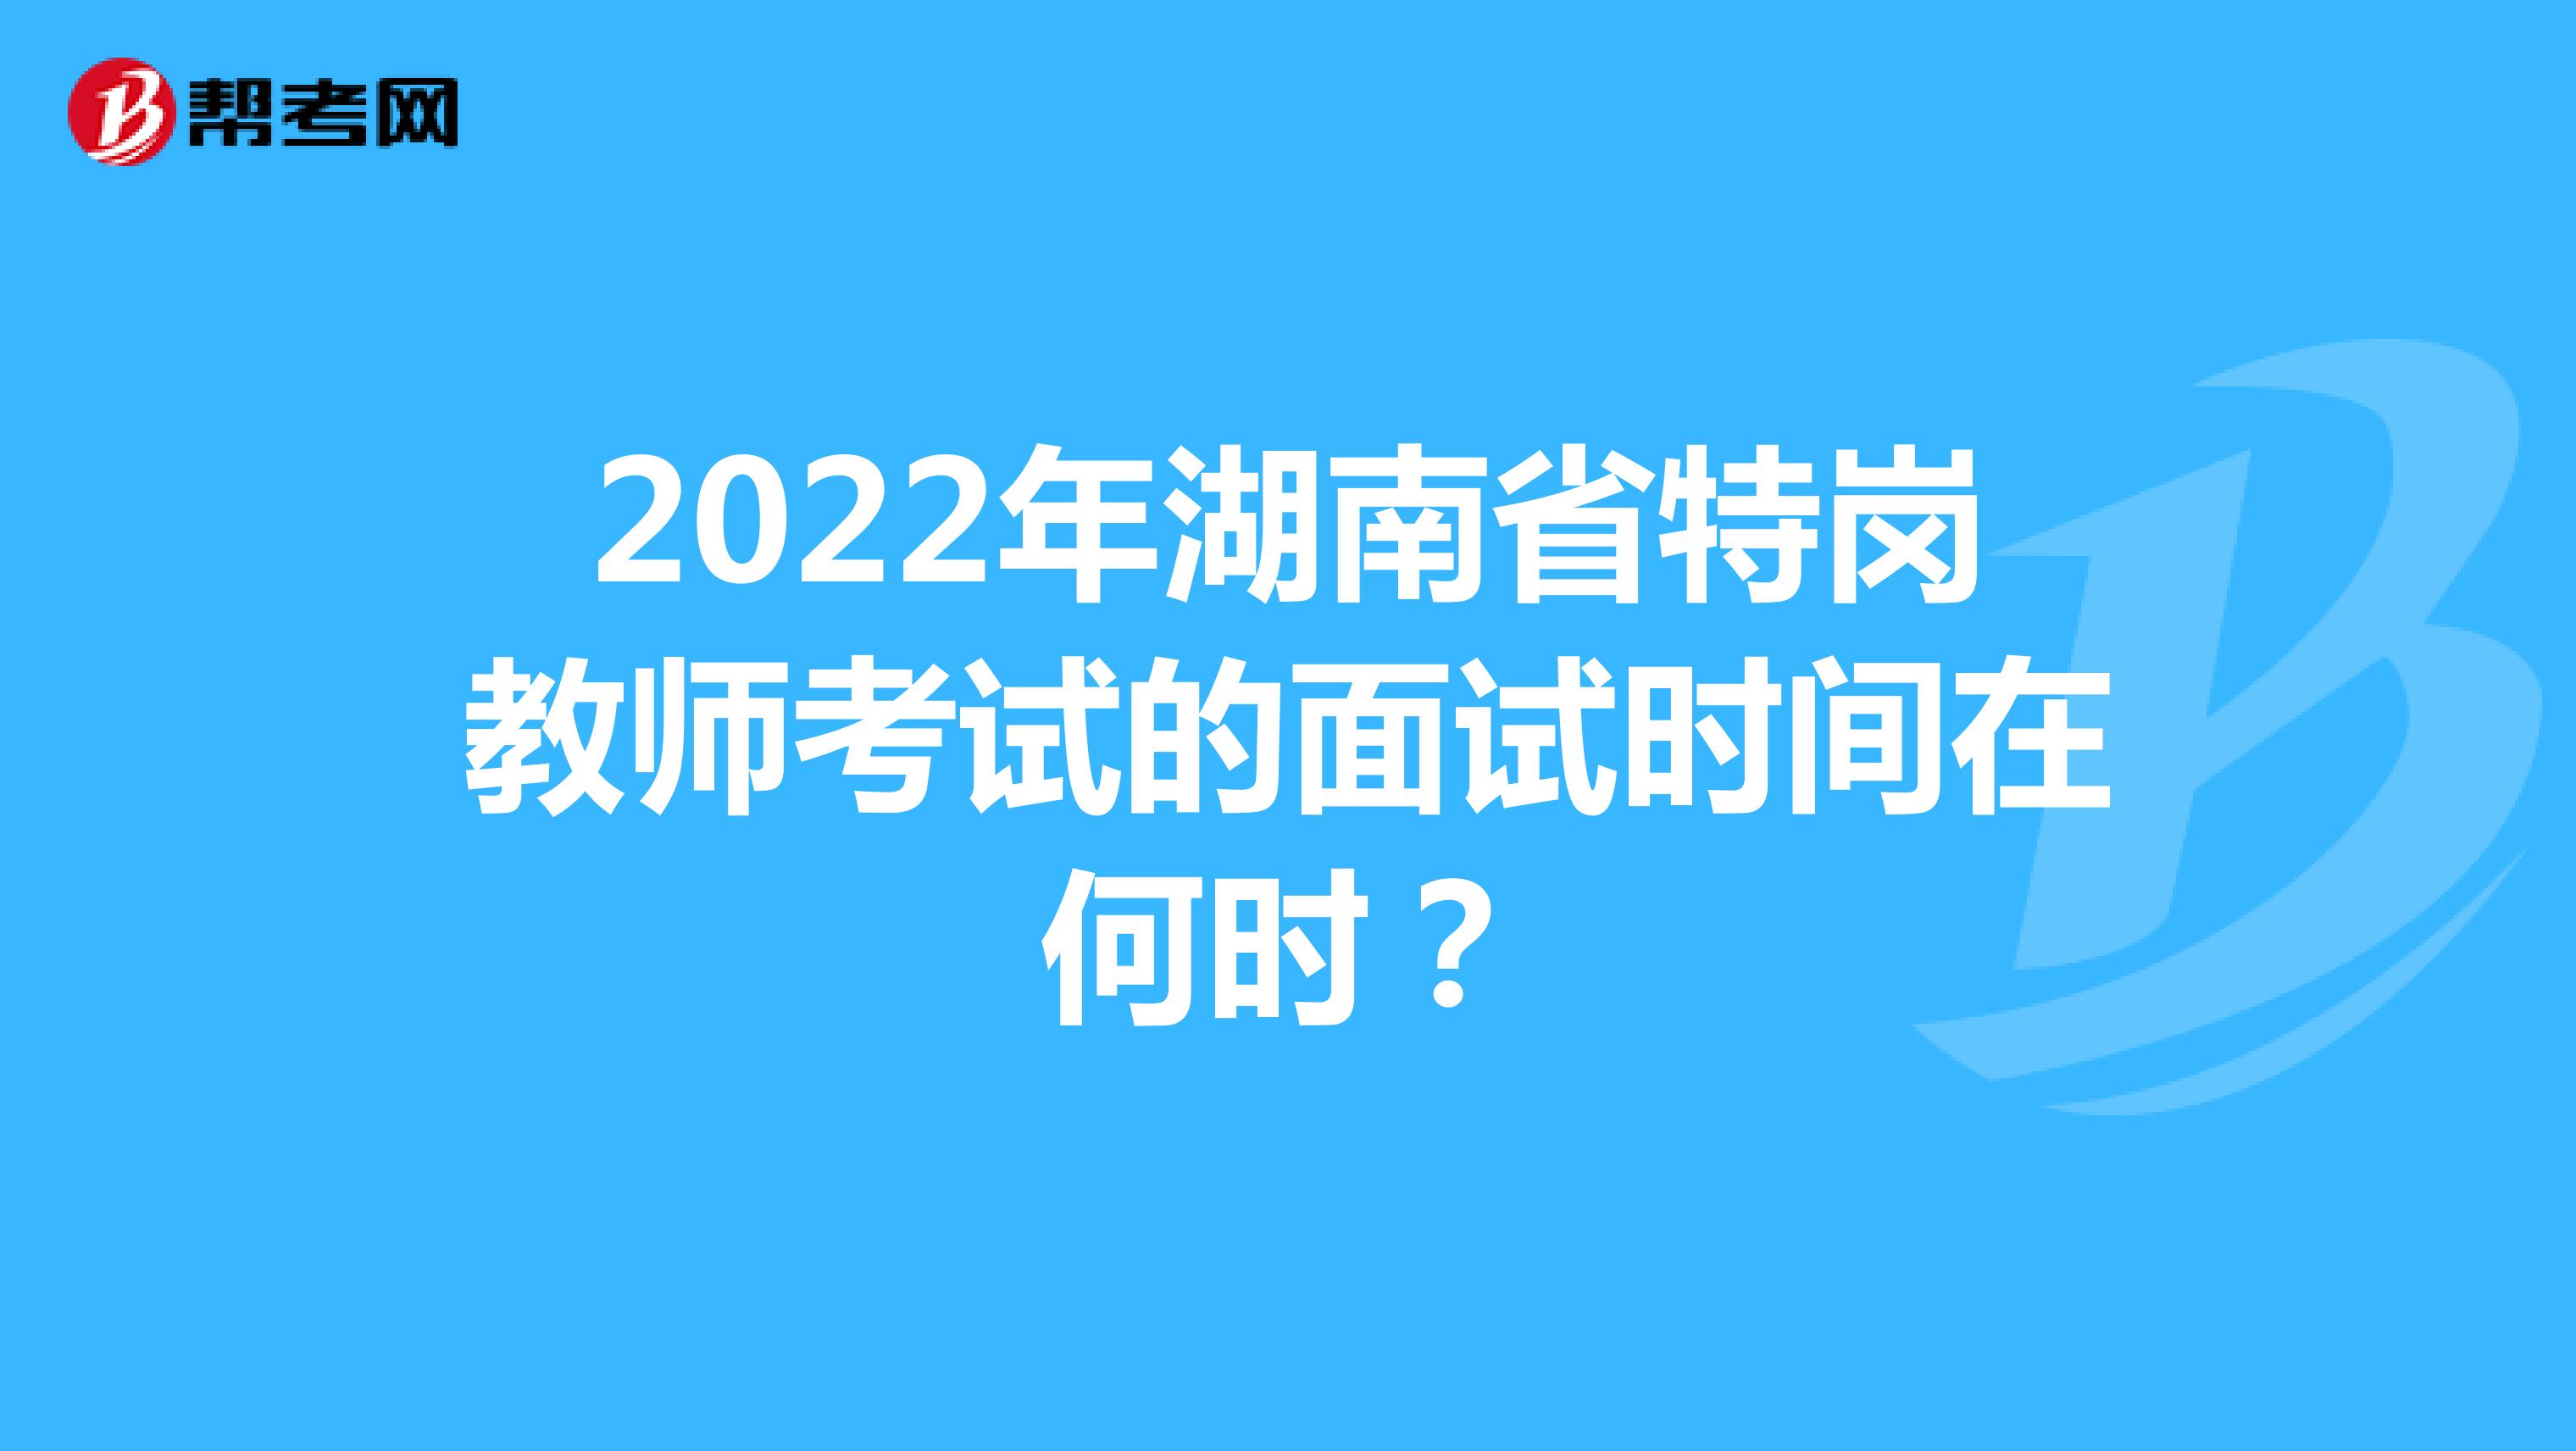 2022年湖南省特岗教师考试的面试时间在何时？